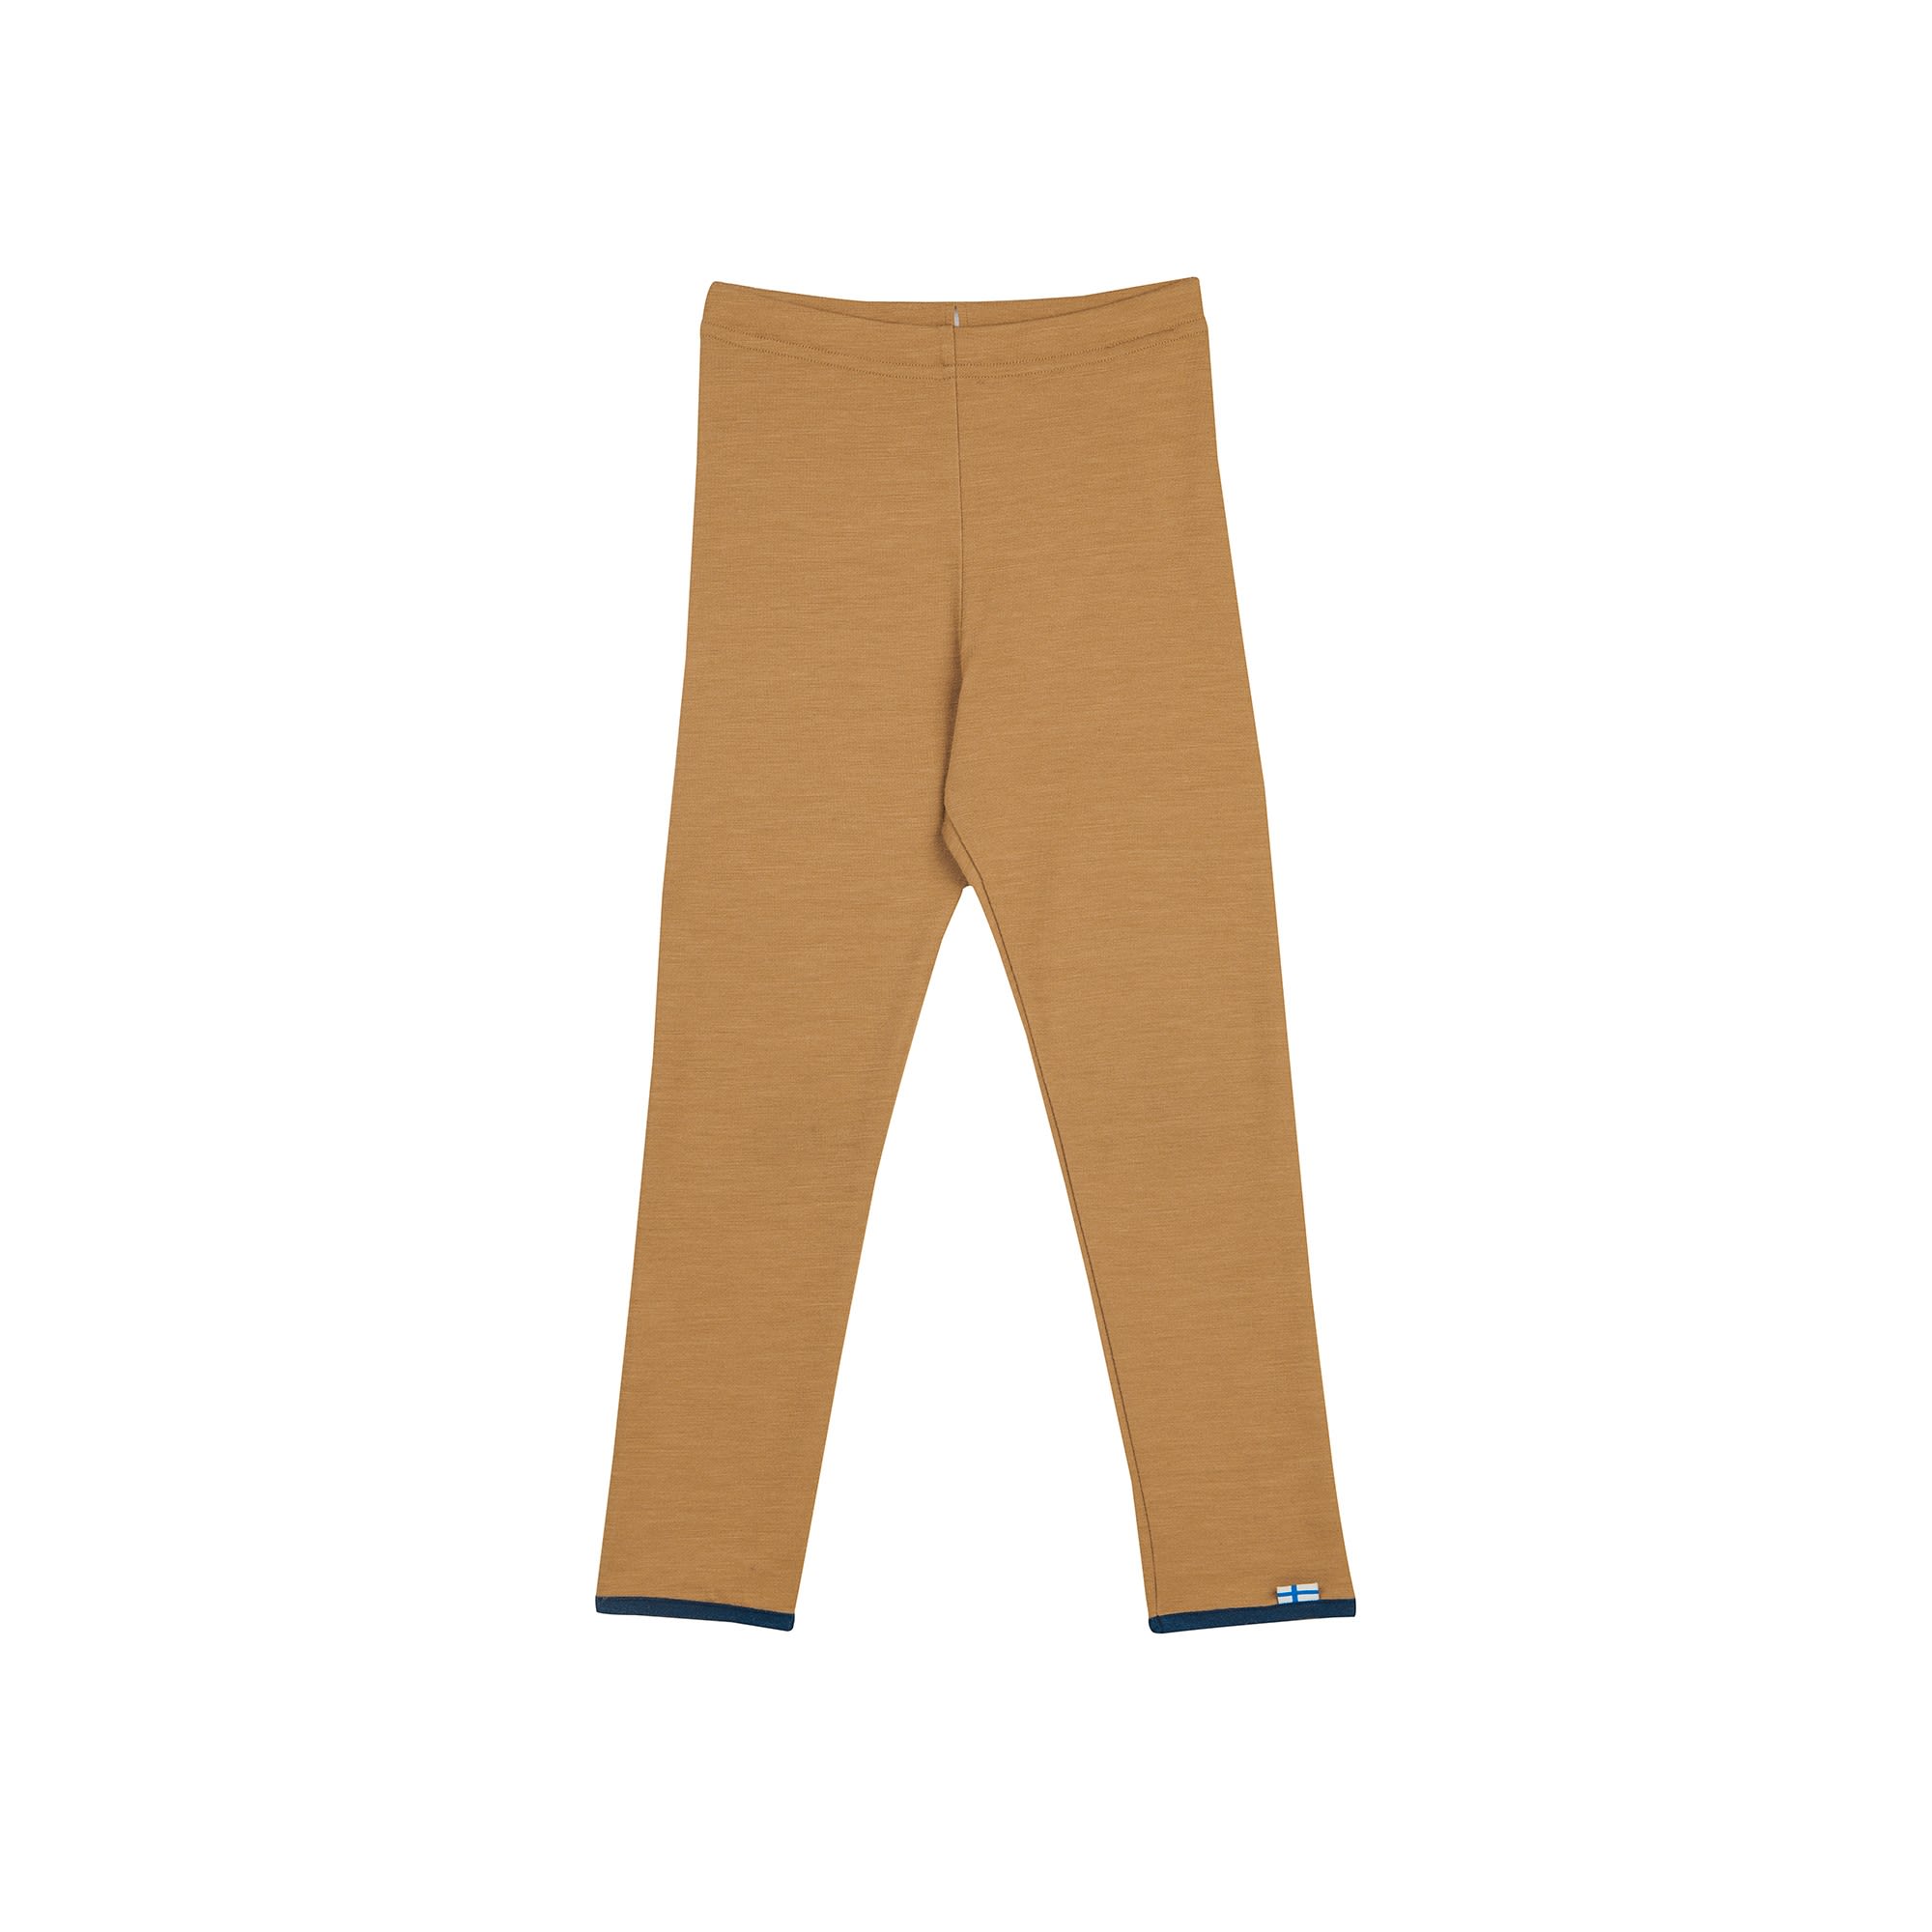 Finkid Leikki Wool (Vorgngermodell) Braun- Softshellhosen- Grsse 80 - 90 - Farbe Cinnamon - Navy unter Finkid